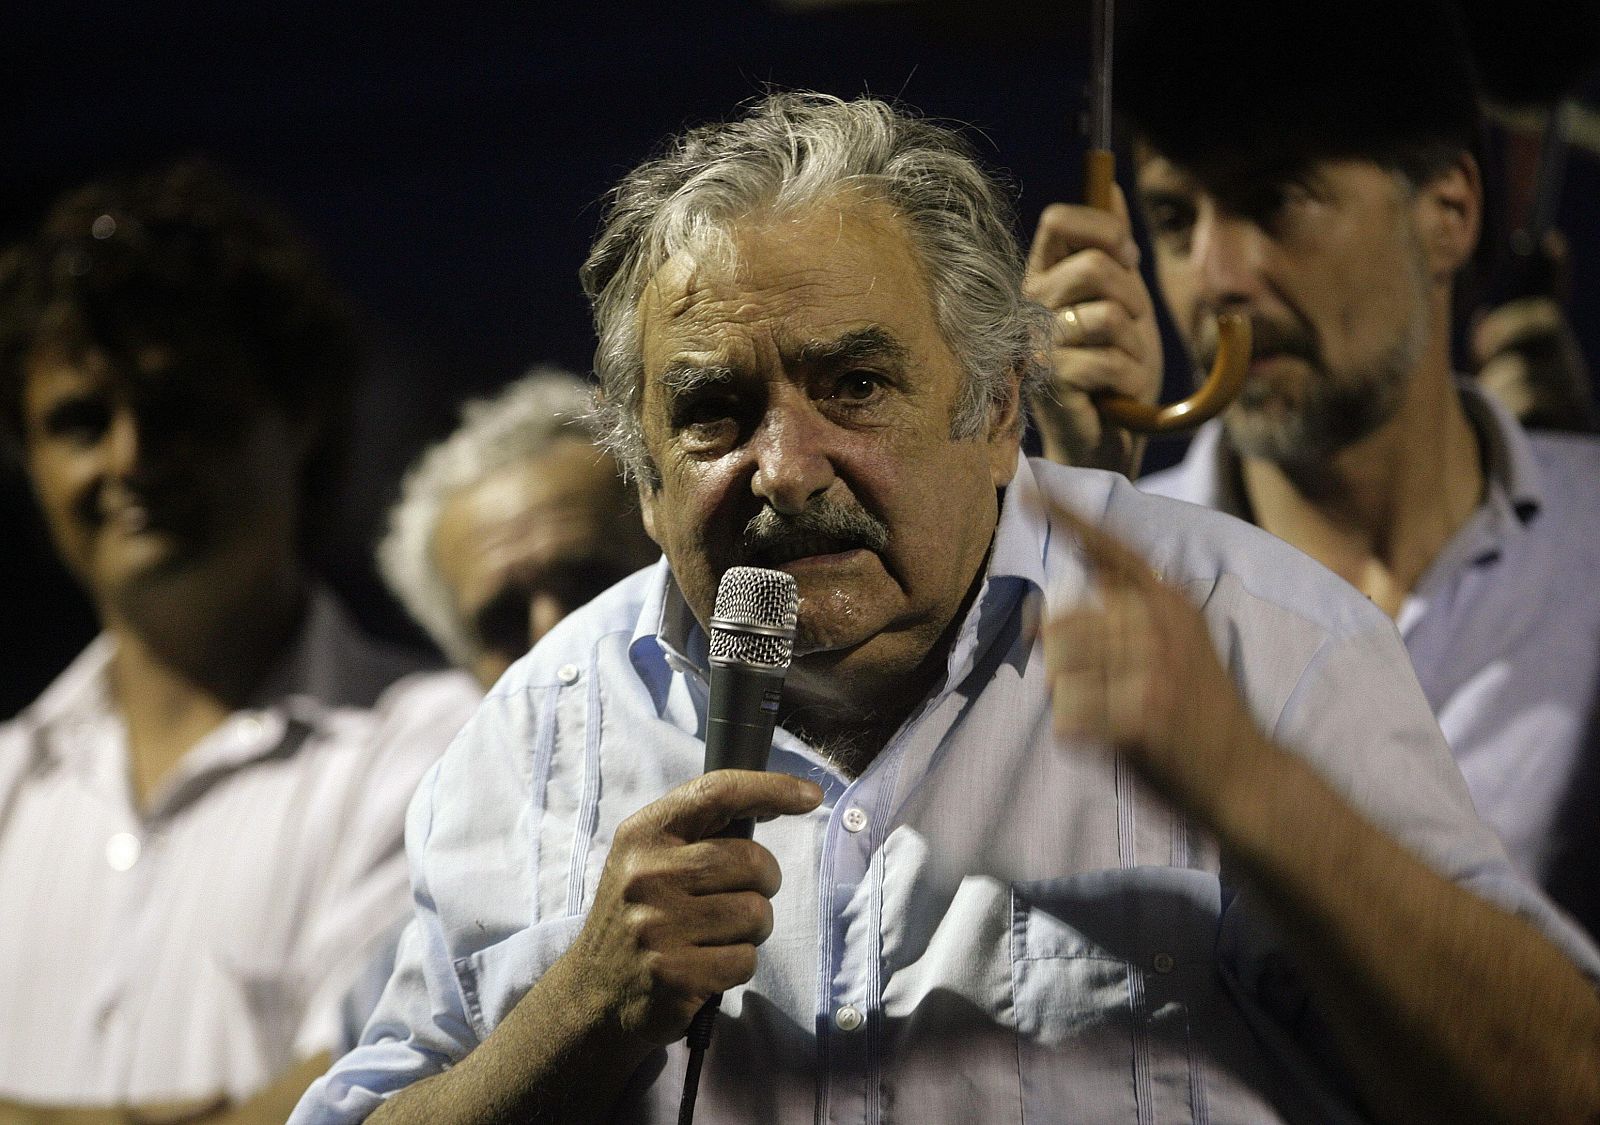 El candidato uruguayo del Frente Amplio, José Mujica, participa en uno de sus últimos actos de campaña en Maldonado, Uruguay.